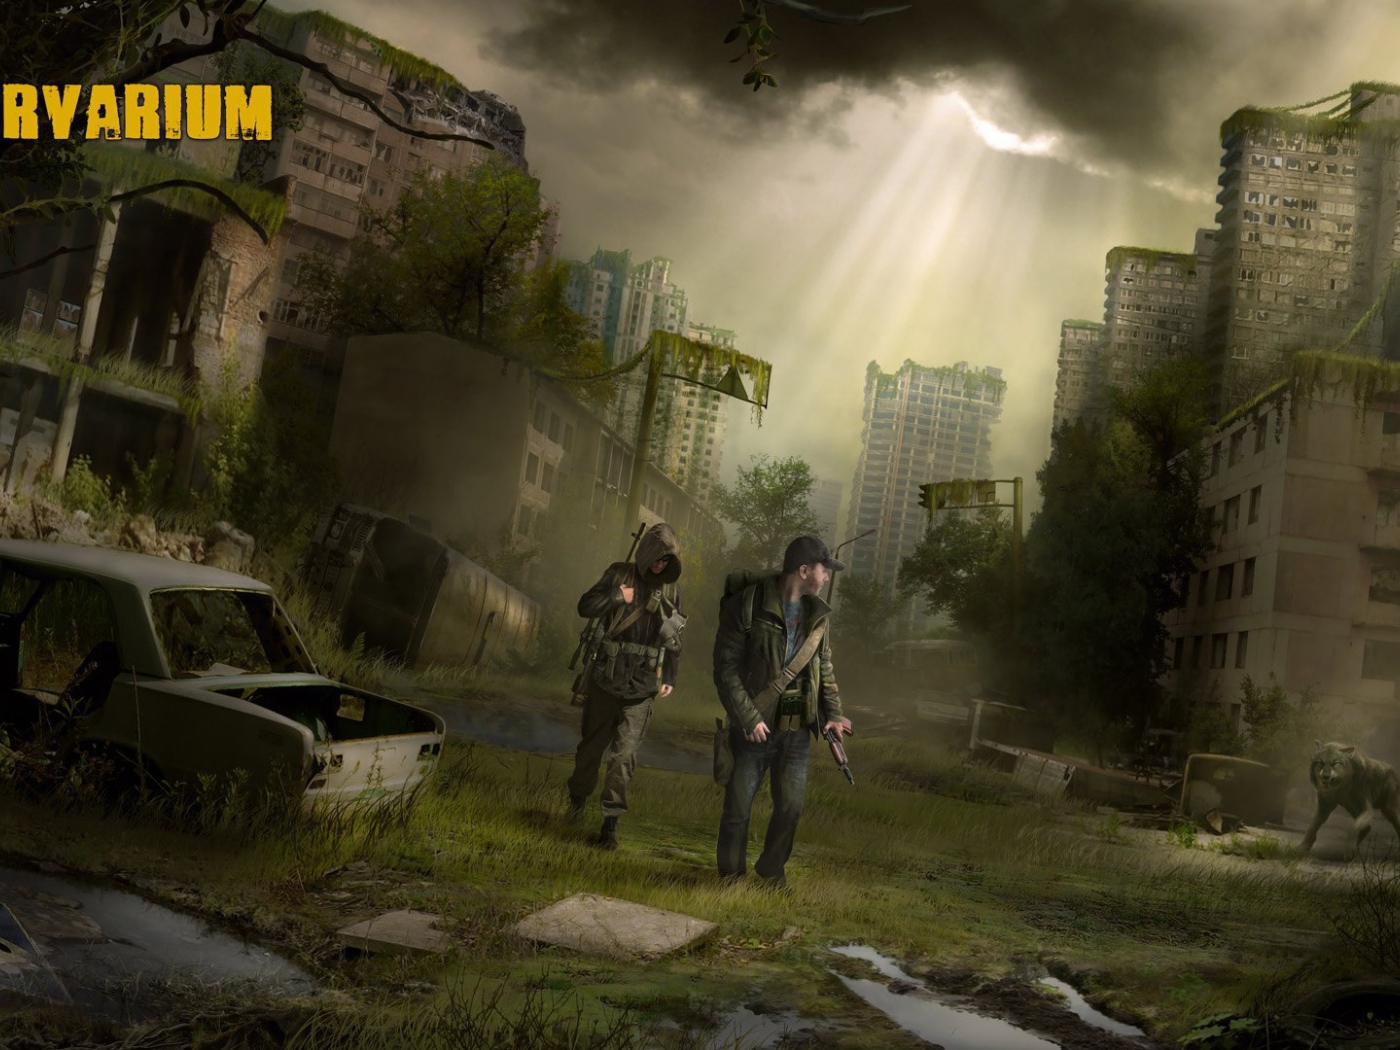 Dead City in the game Survarium